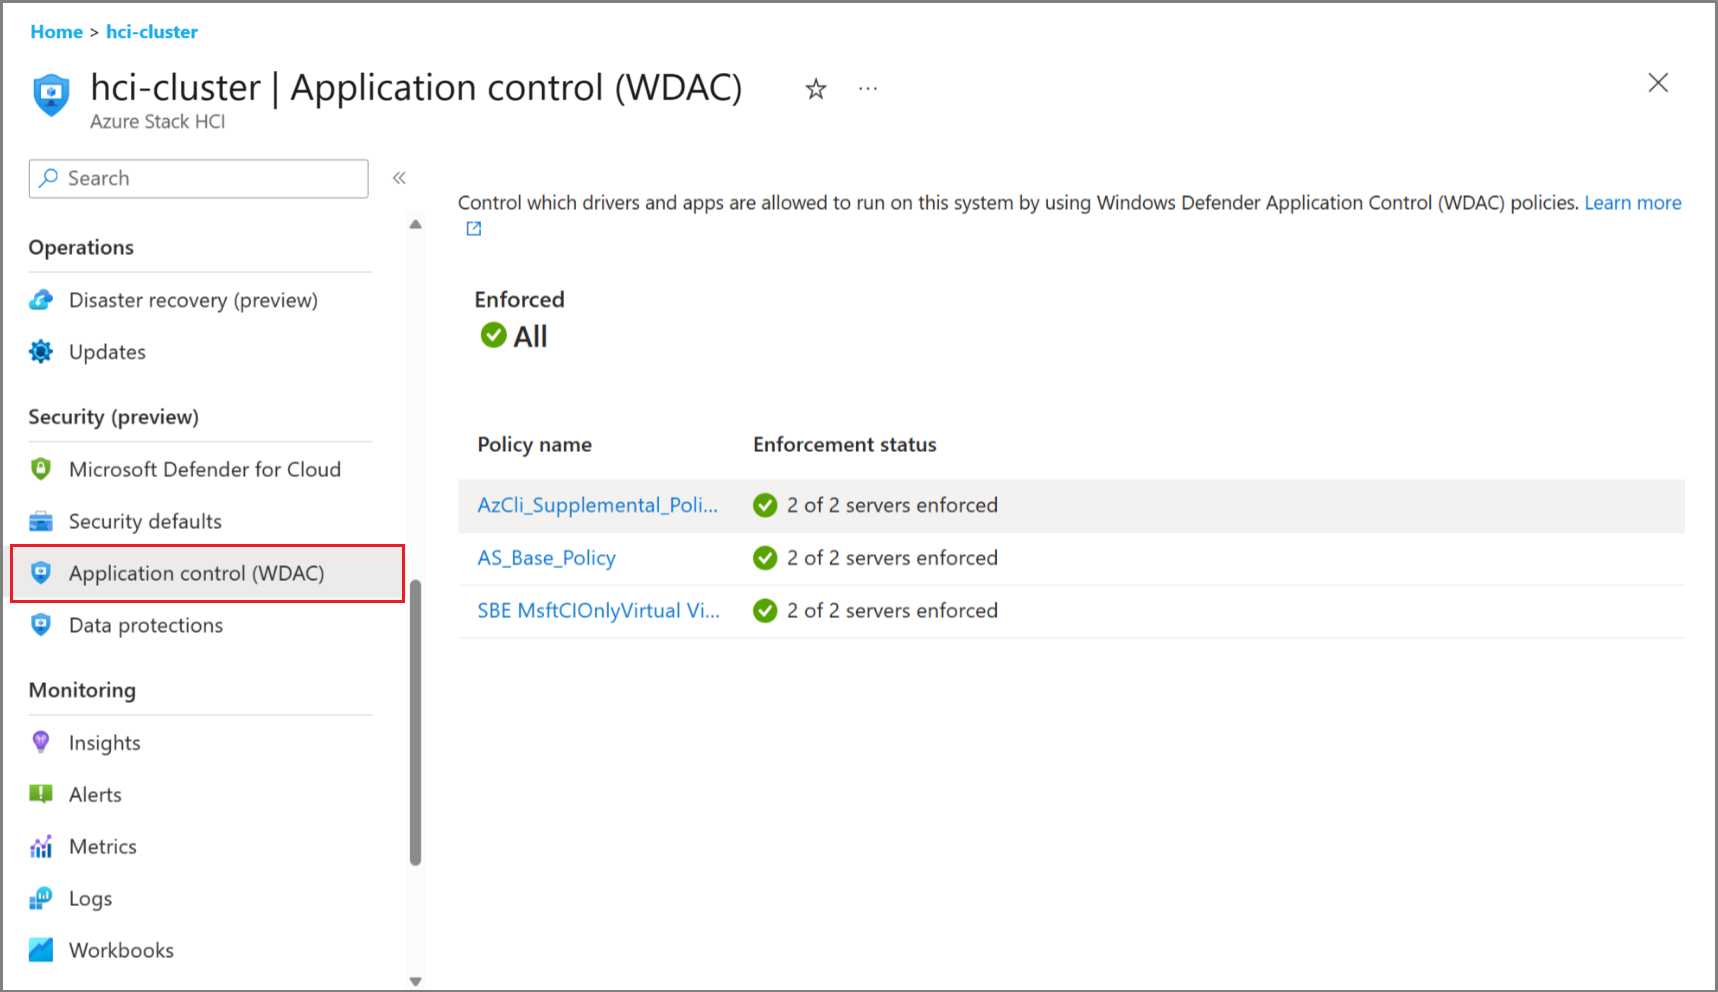 Снимок экрана: страница управления приложениями (WDAC) в портал Azure.